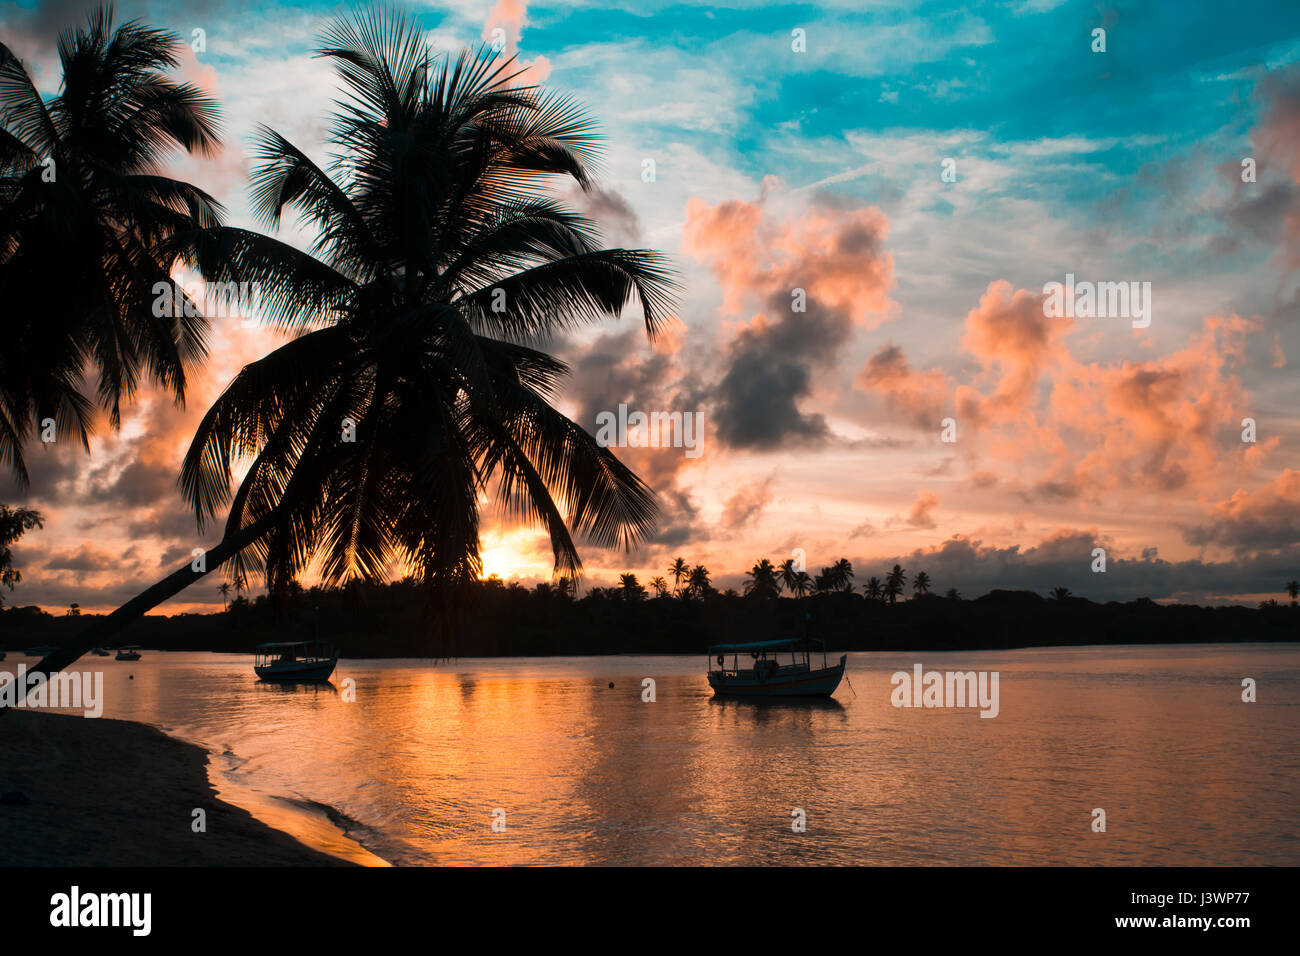 Playa paraíso atardecer con palmeras tropicales Foto de stock